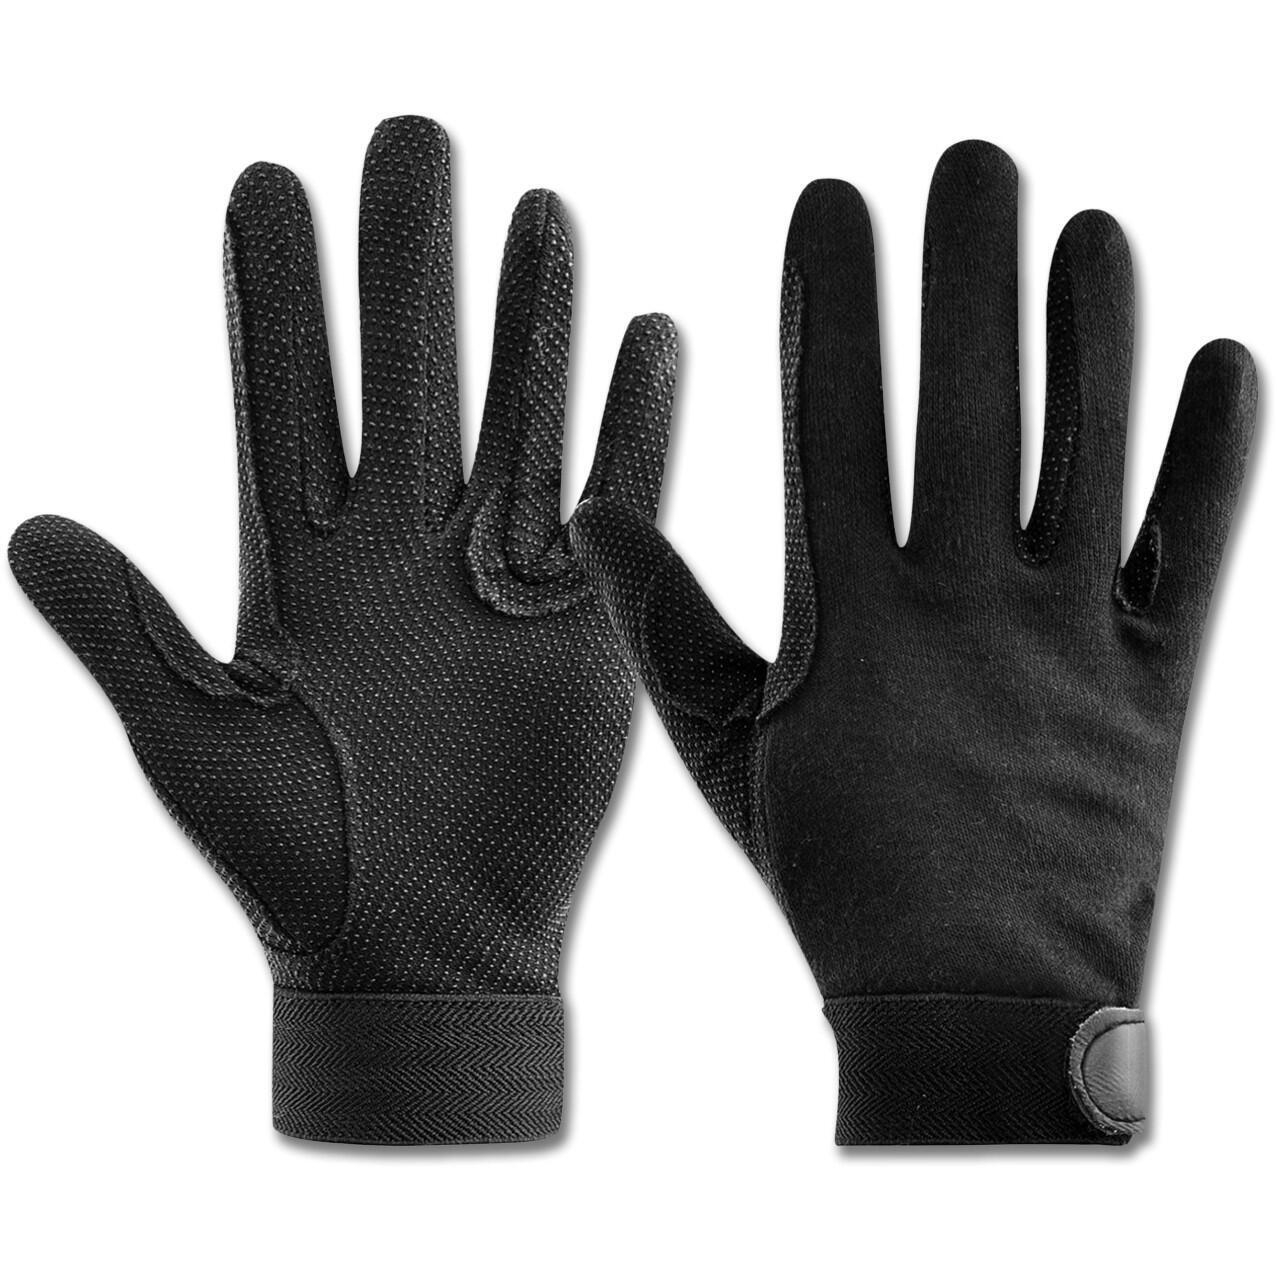 защитные противоскользящие перчатки для верховой езды Перчатки ELT для верховой езды, черный